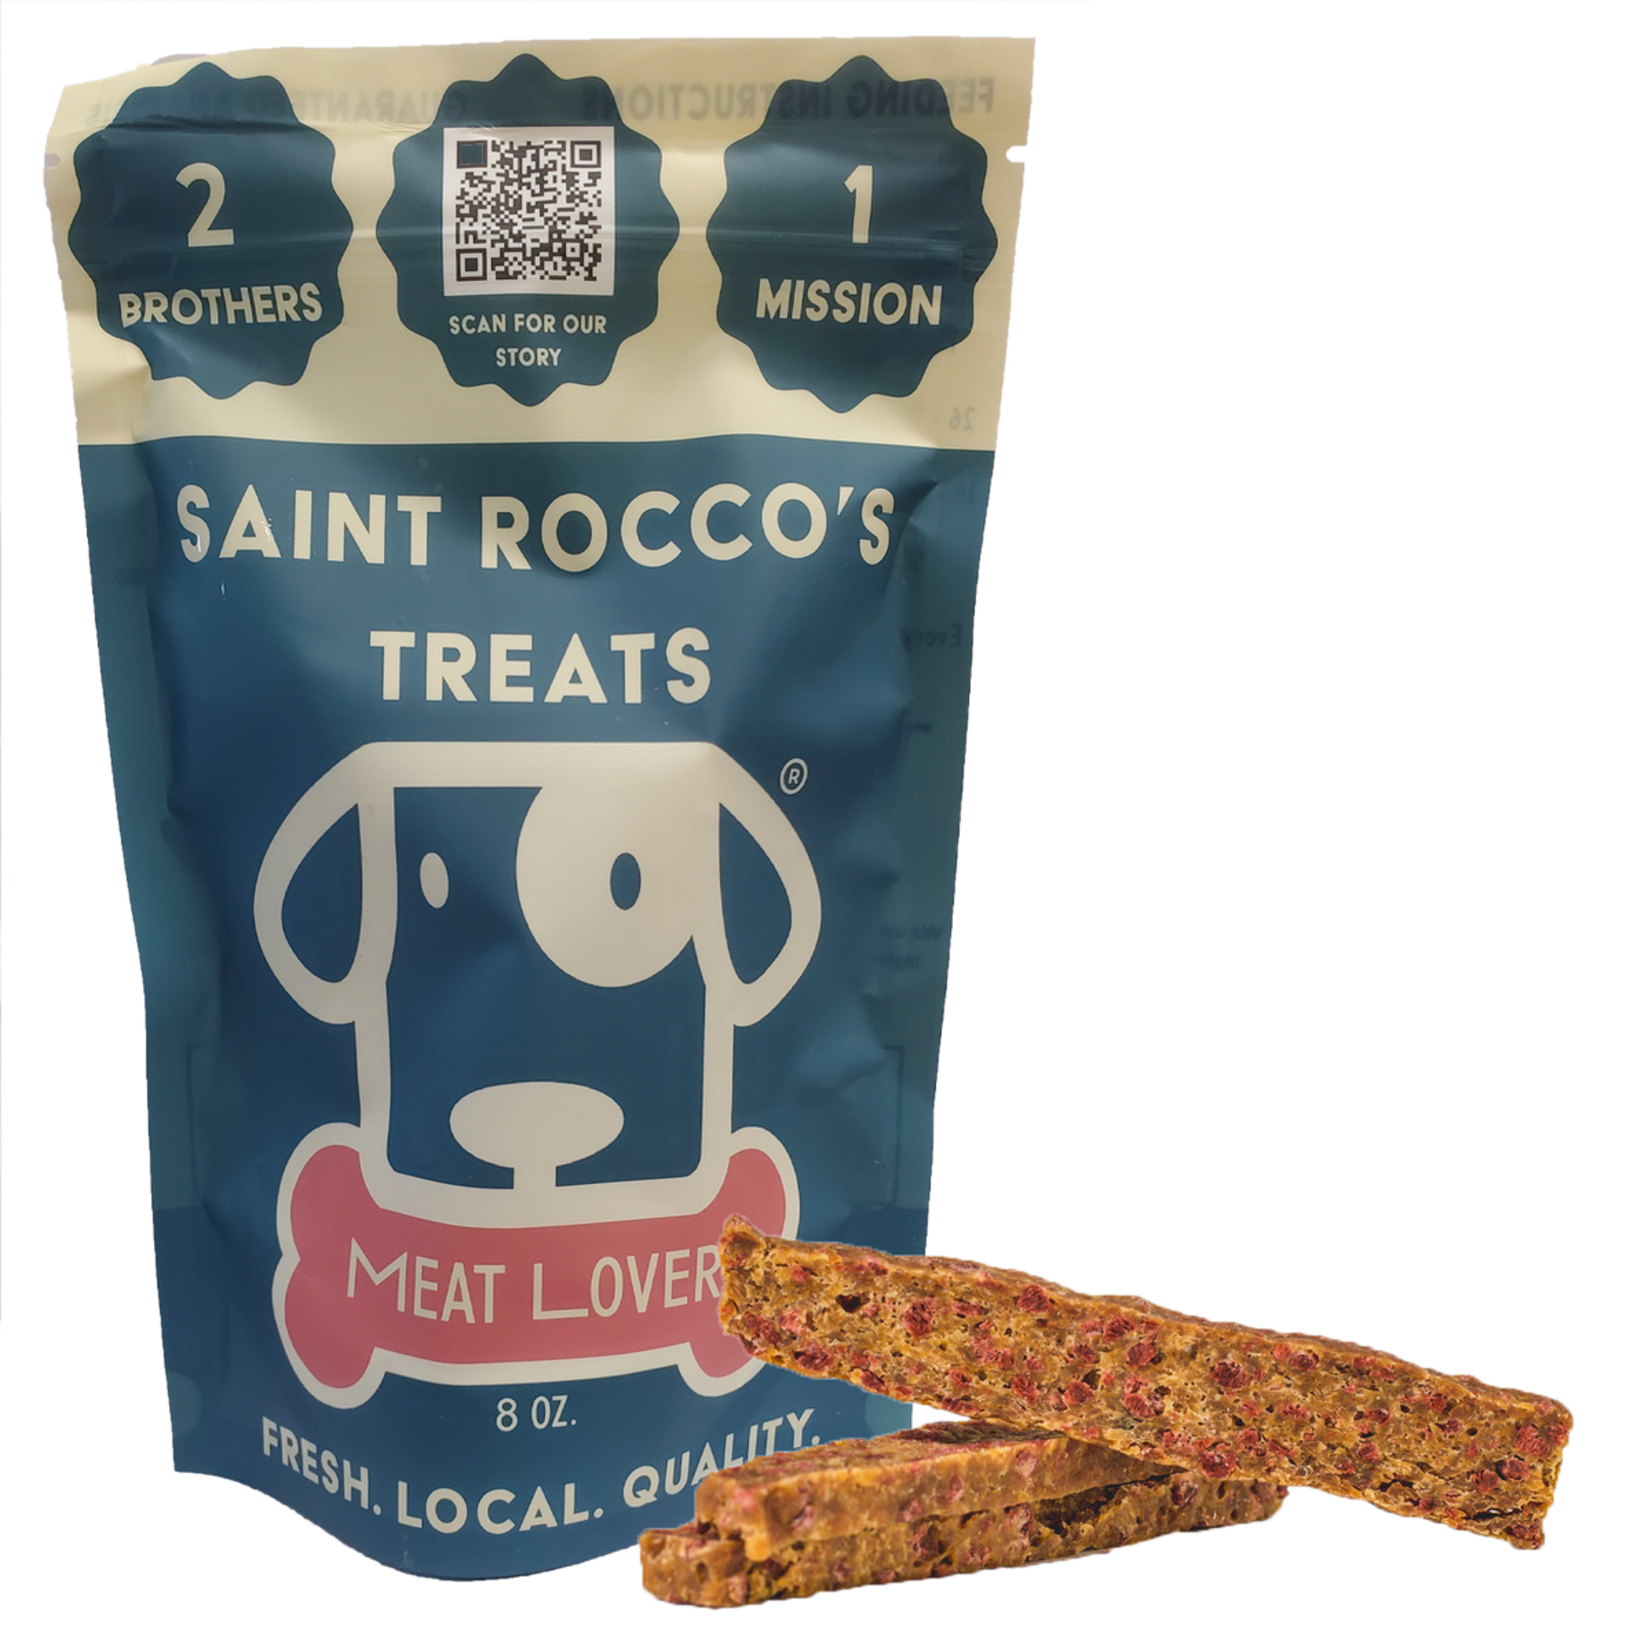 Saint Rocco's Saint Rocco 8oz Meat Lover Treats